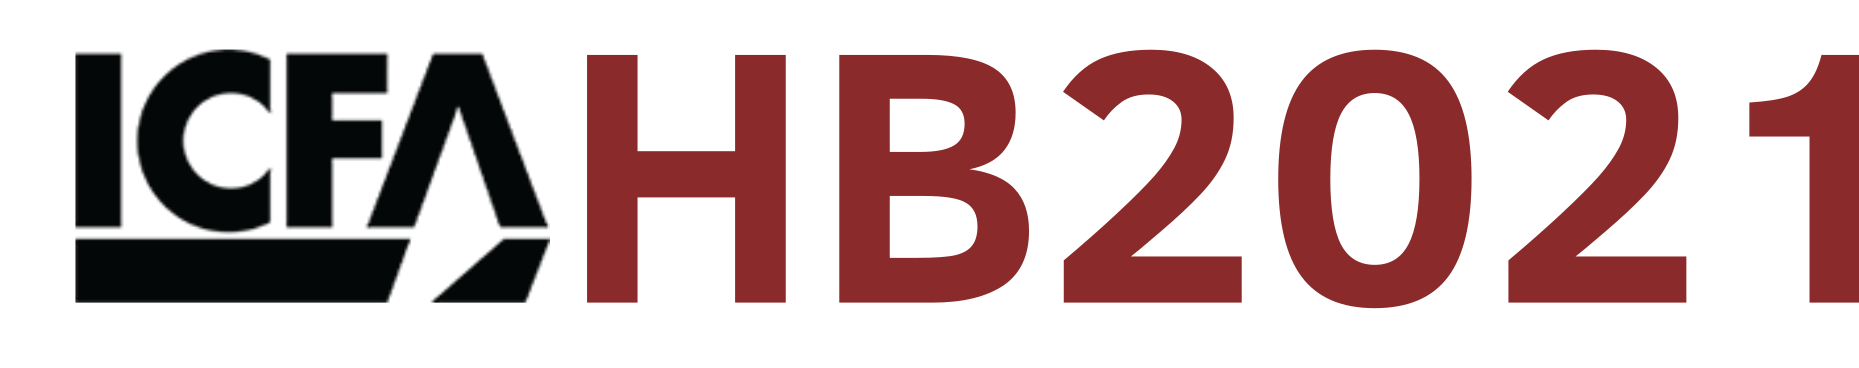 HB2021